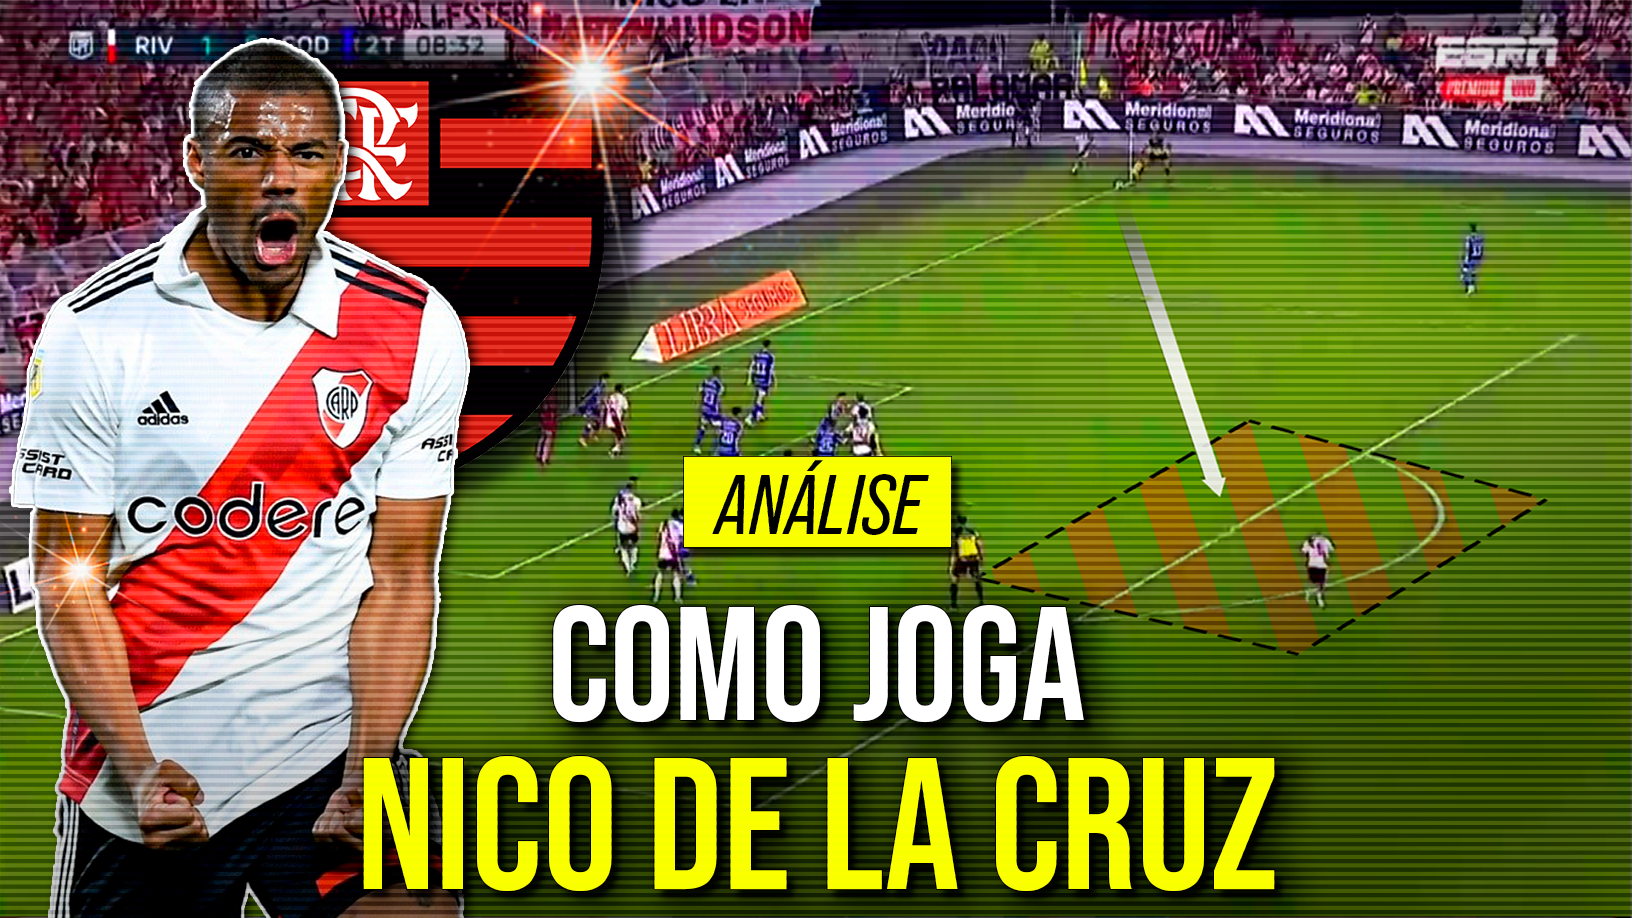 Conheça o uruguaio Nico De La Cruz, meio-campista do River Plate